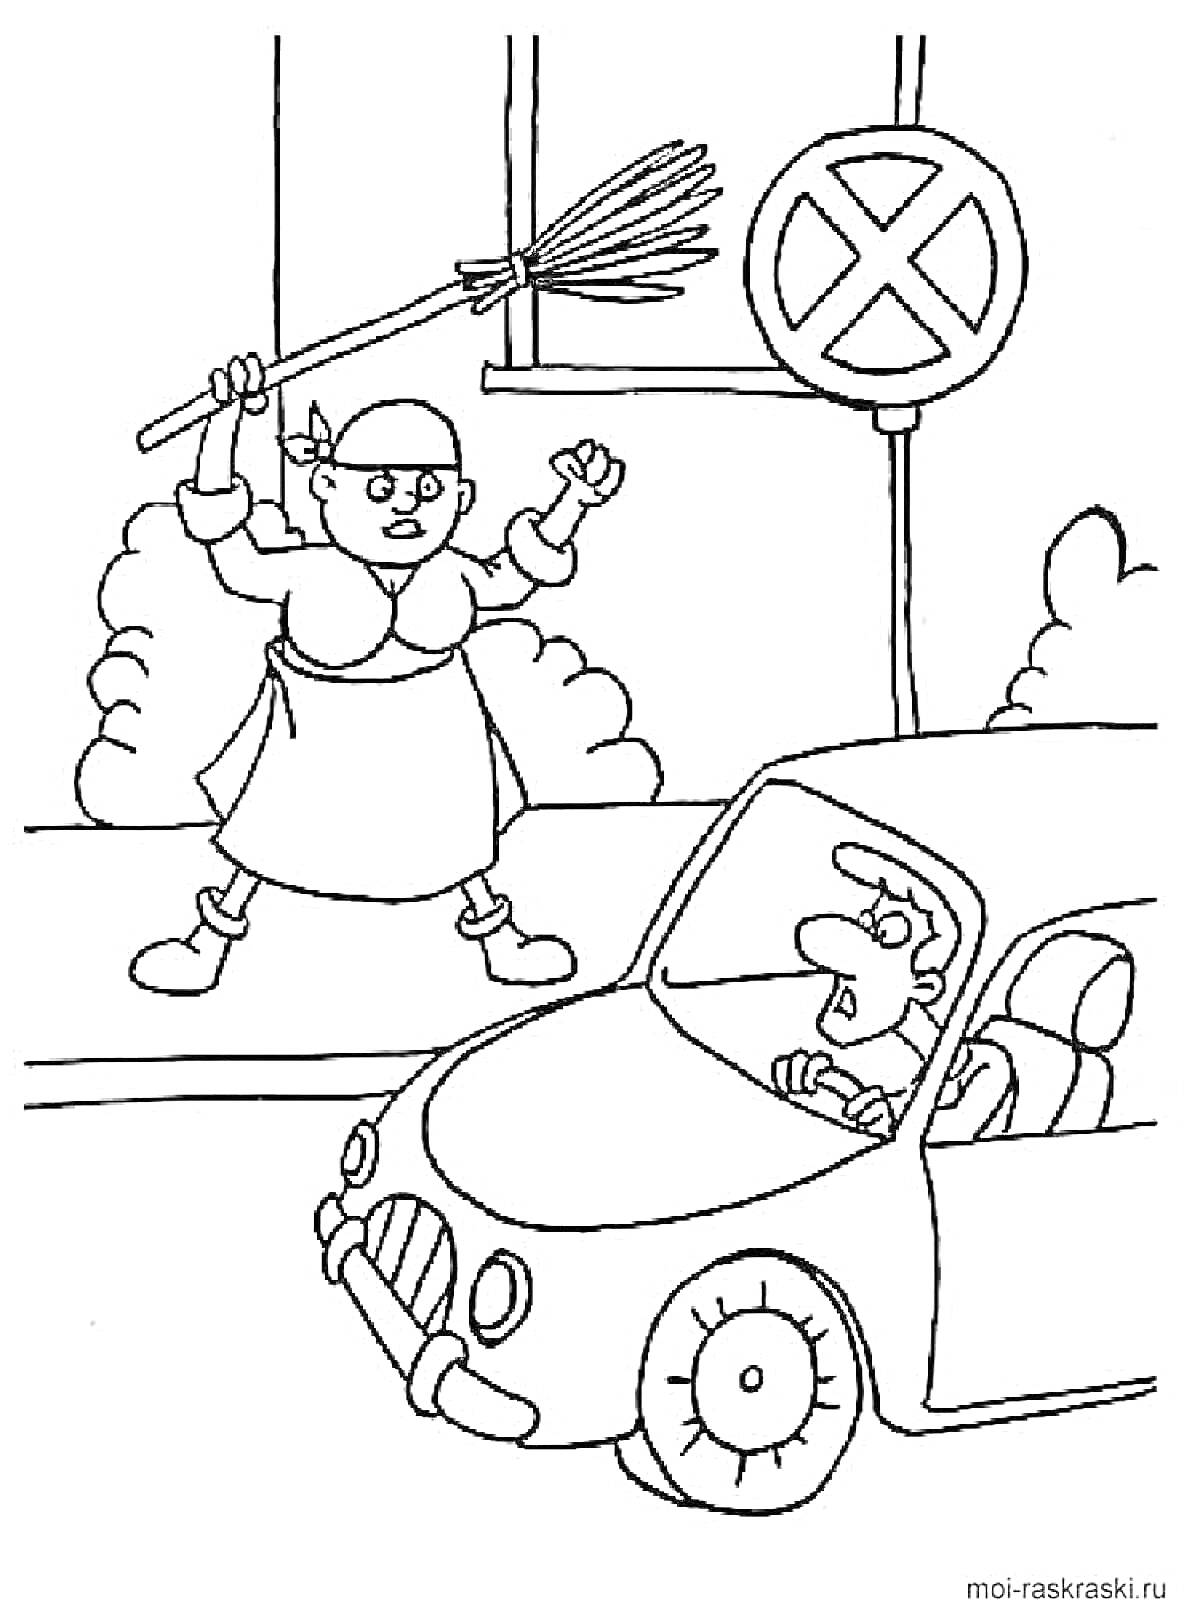 Раскраска Женщина с метлой и знак 'Остановка запрещена' рядом с автомобилем